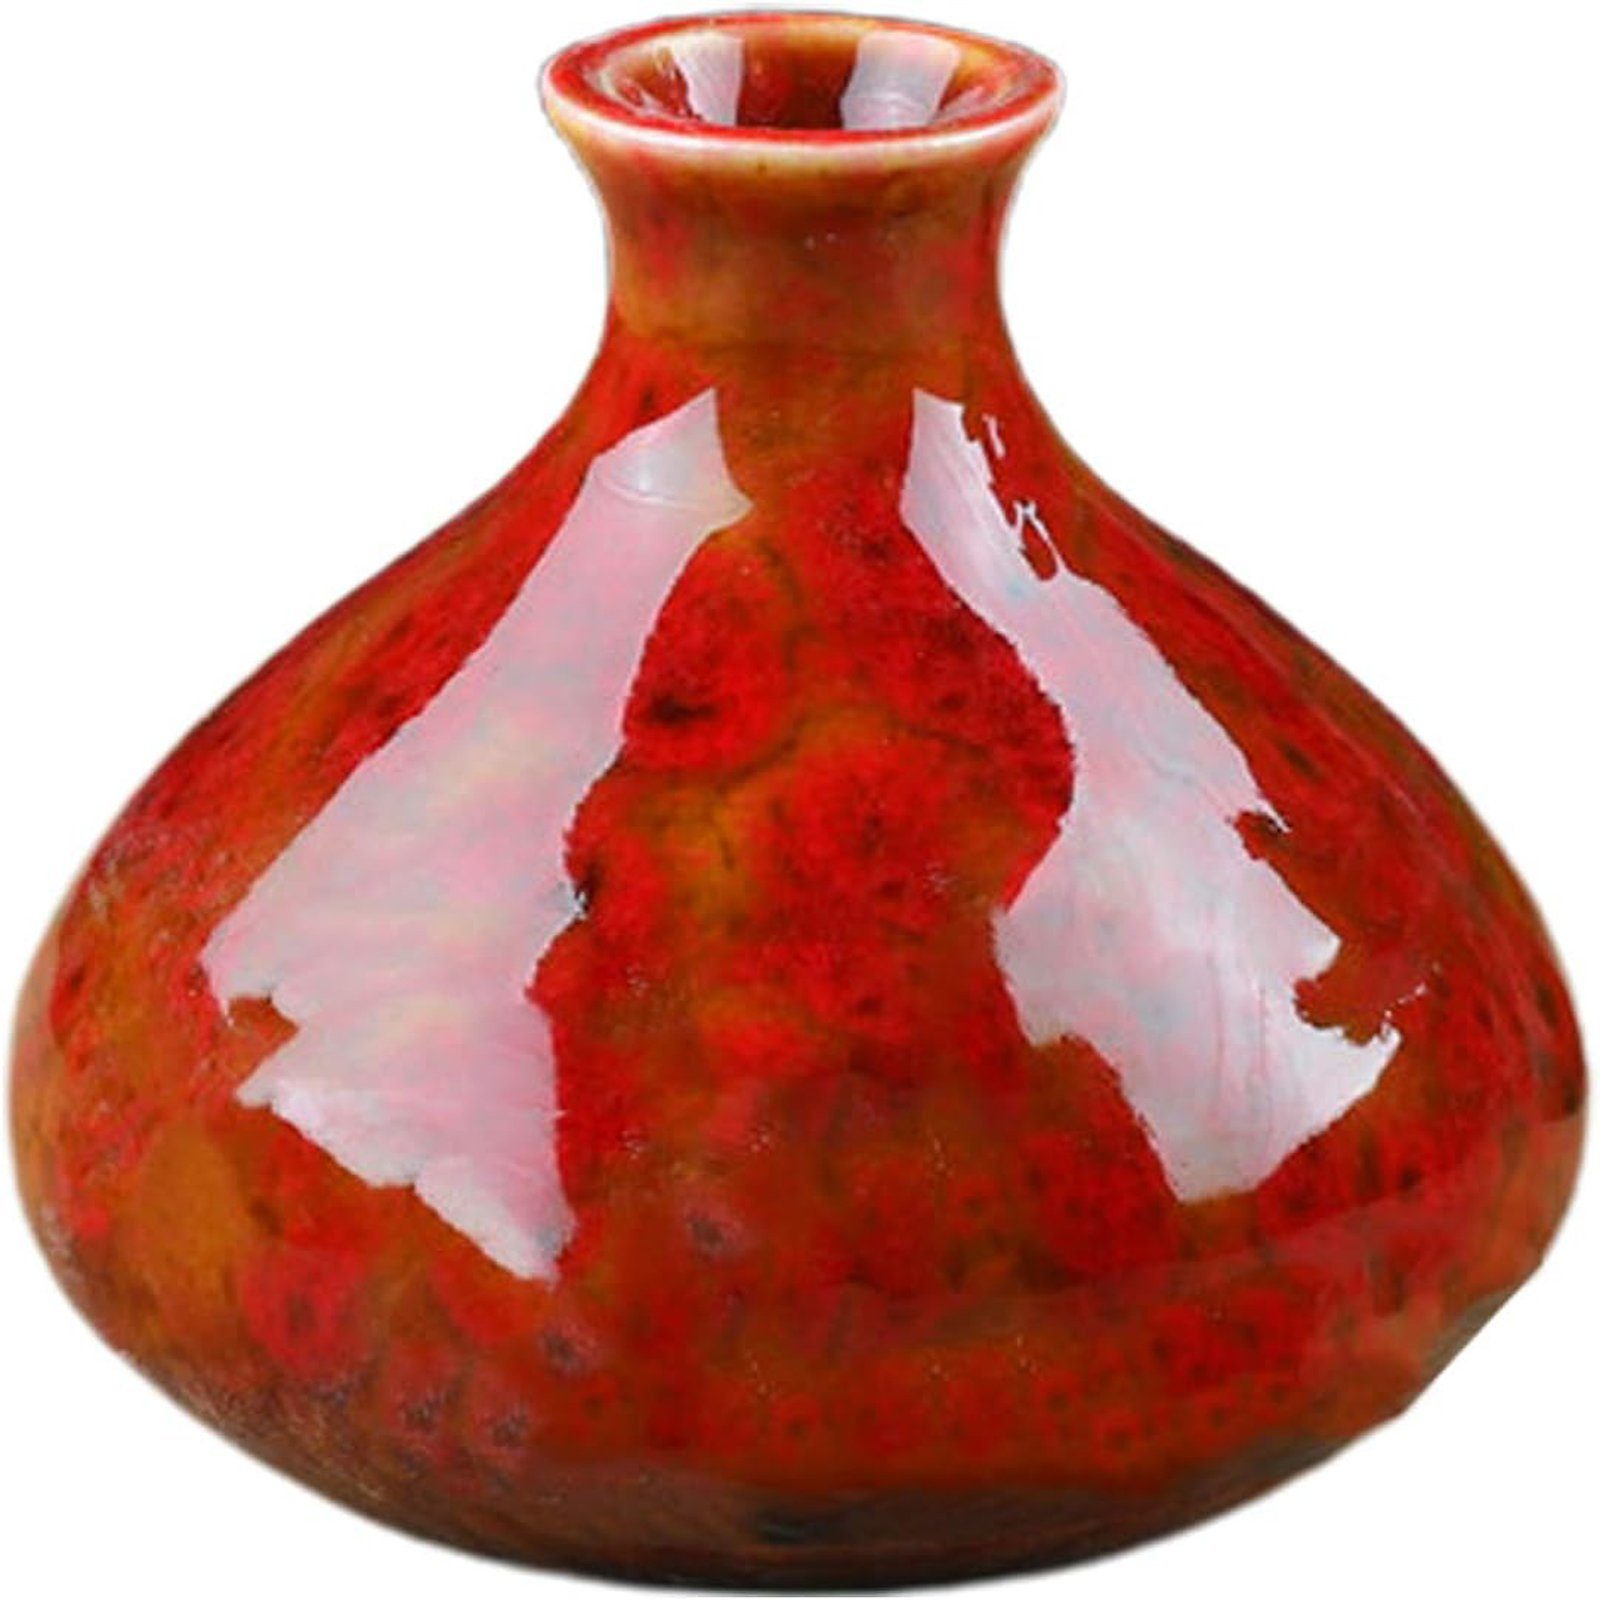 SEEZSSA Dekovase Keramikvase,Blumentopf deko für Wohnzimmer, Heimdekoration, Regal, Brenngeformte Keramik-Vase,großer Bauch, Kaliber 2.4cm,7x7.5cm,bunt Rot